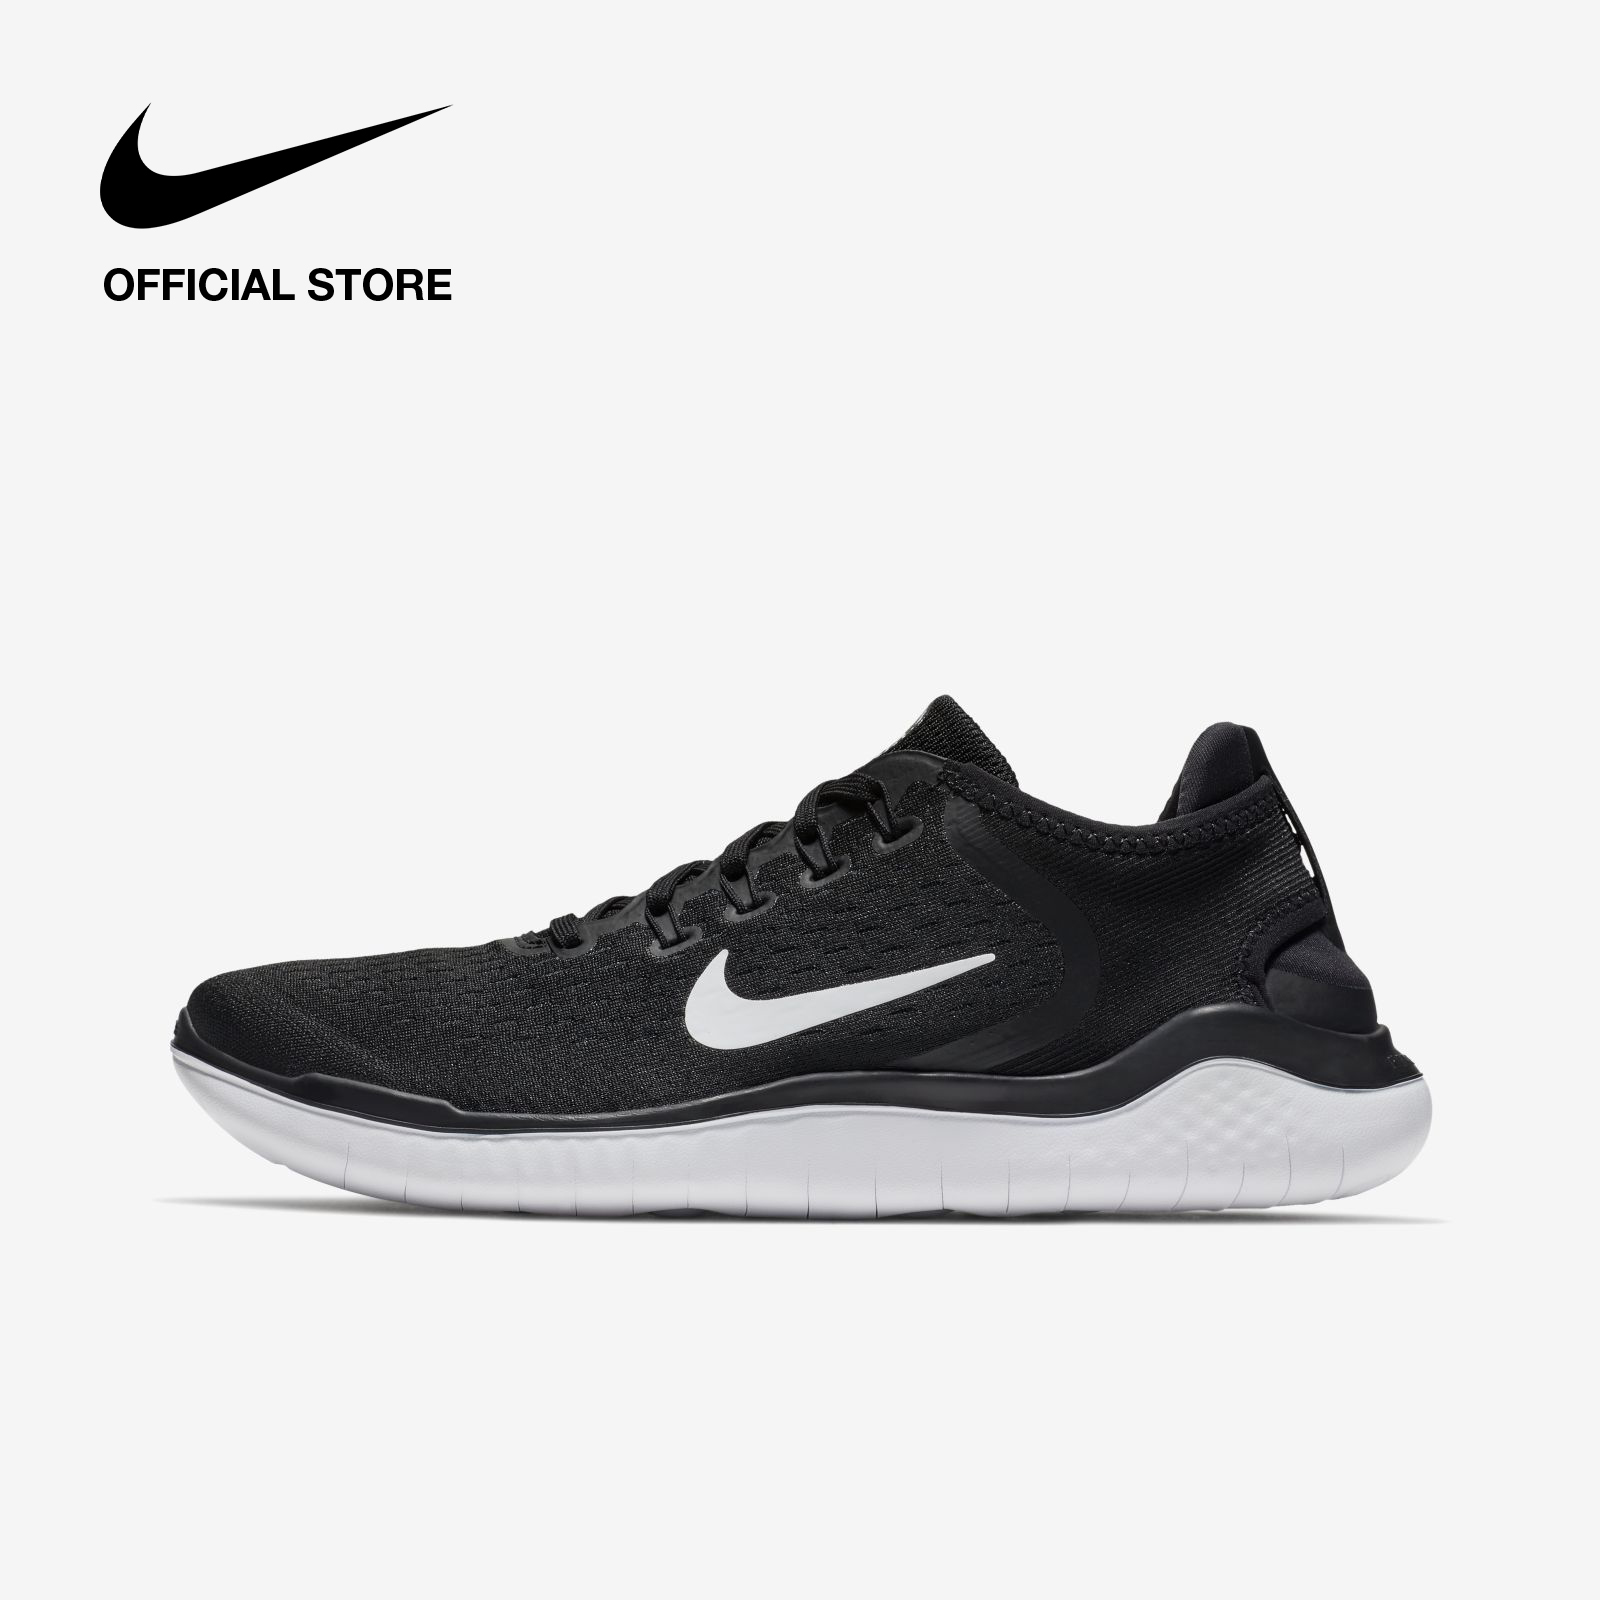 Nike Men's Free RN 2018 Running Shoes - Black ไนกี้ รองเท้าวิ่งผู้ชาย ฟรี อาร์เอ็น 2018 - สีดำ